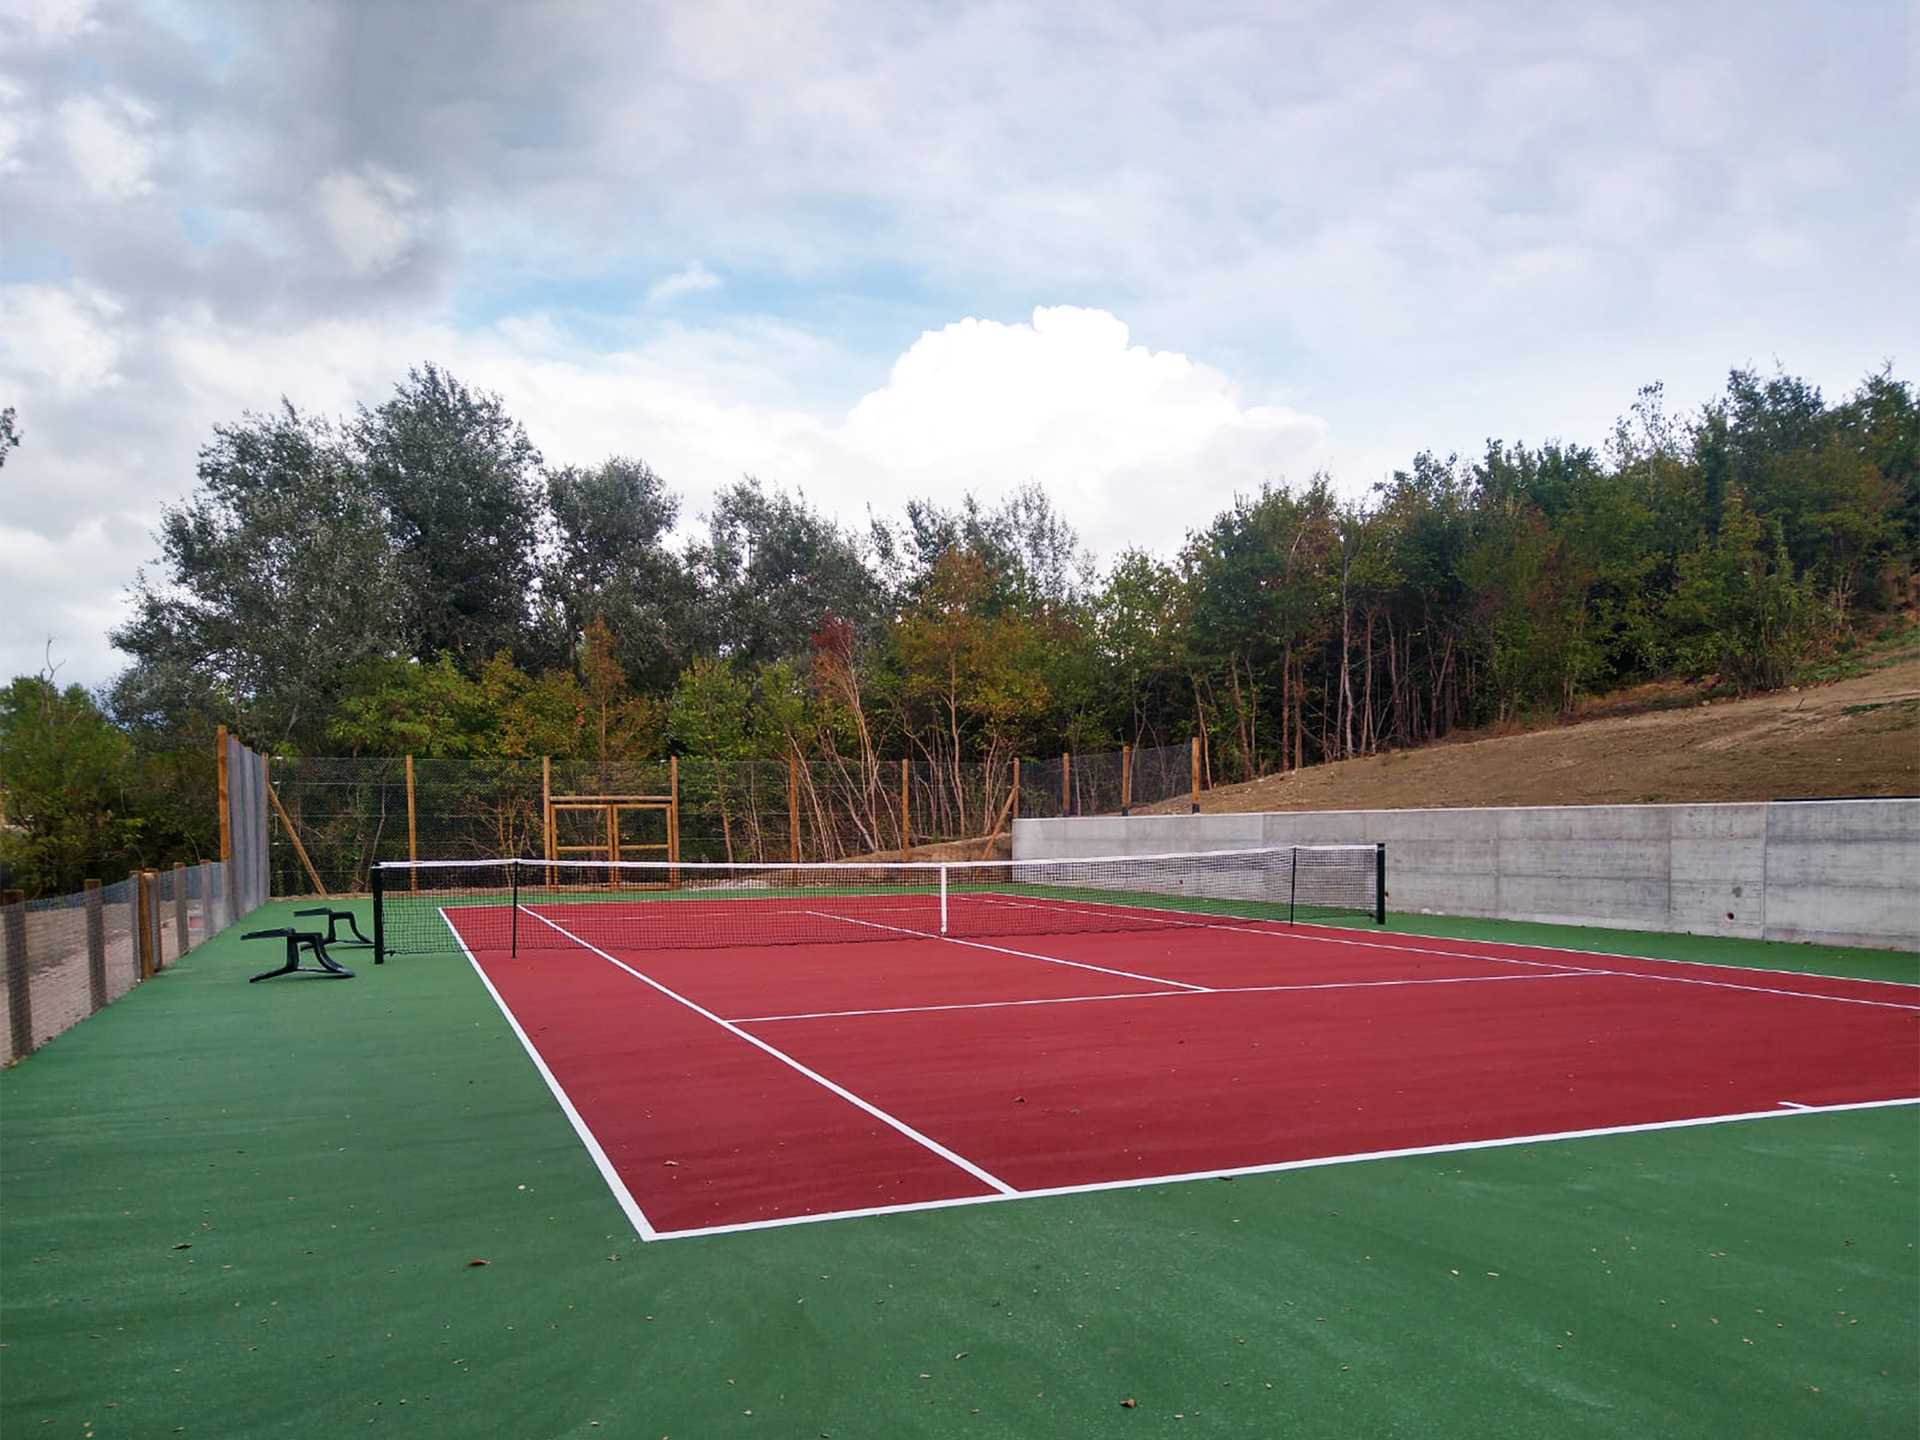 Campo da tennis inserito in un contesto paesaggistico.